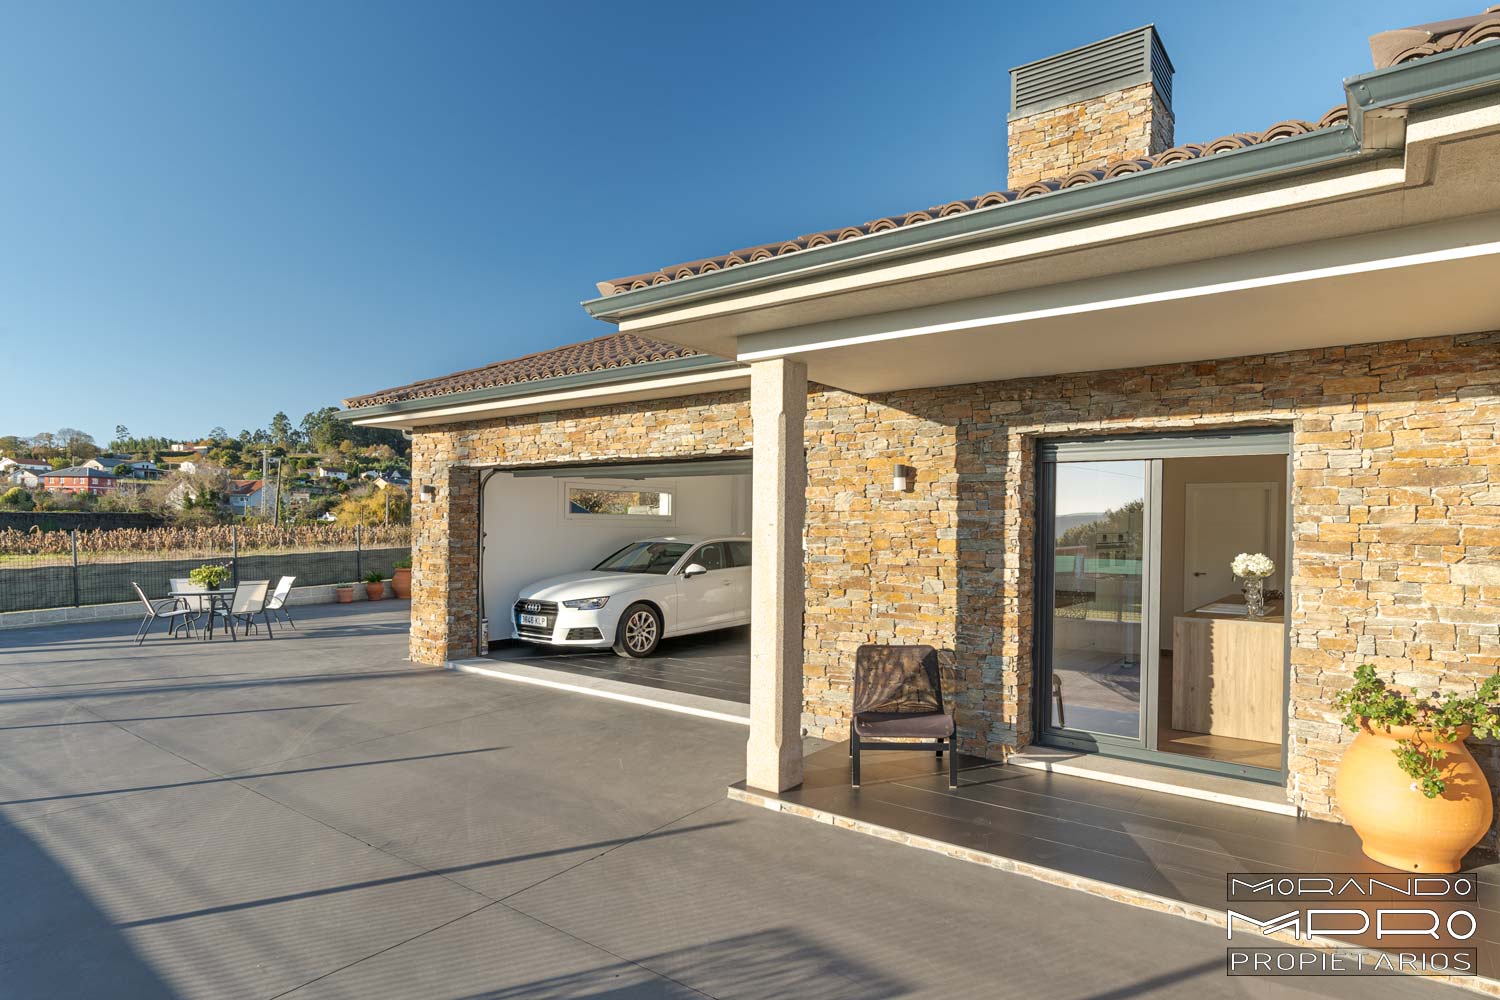 Imagen de una casa moderna de un solo piso con fachada de piedra, garaje abierto con un coche, terraza amplia con mesa y sillas, y cielo despejado.